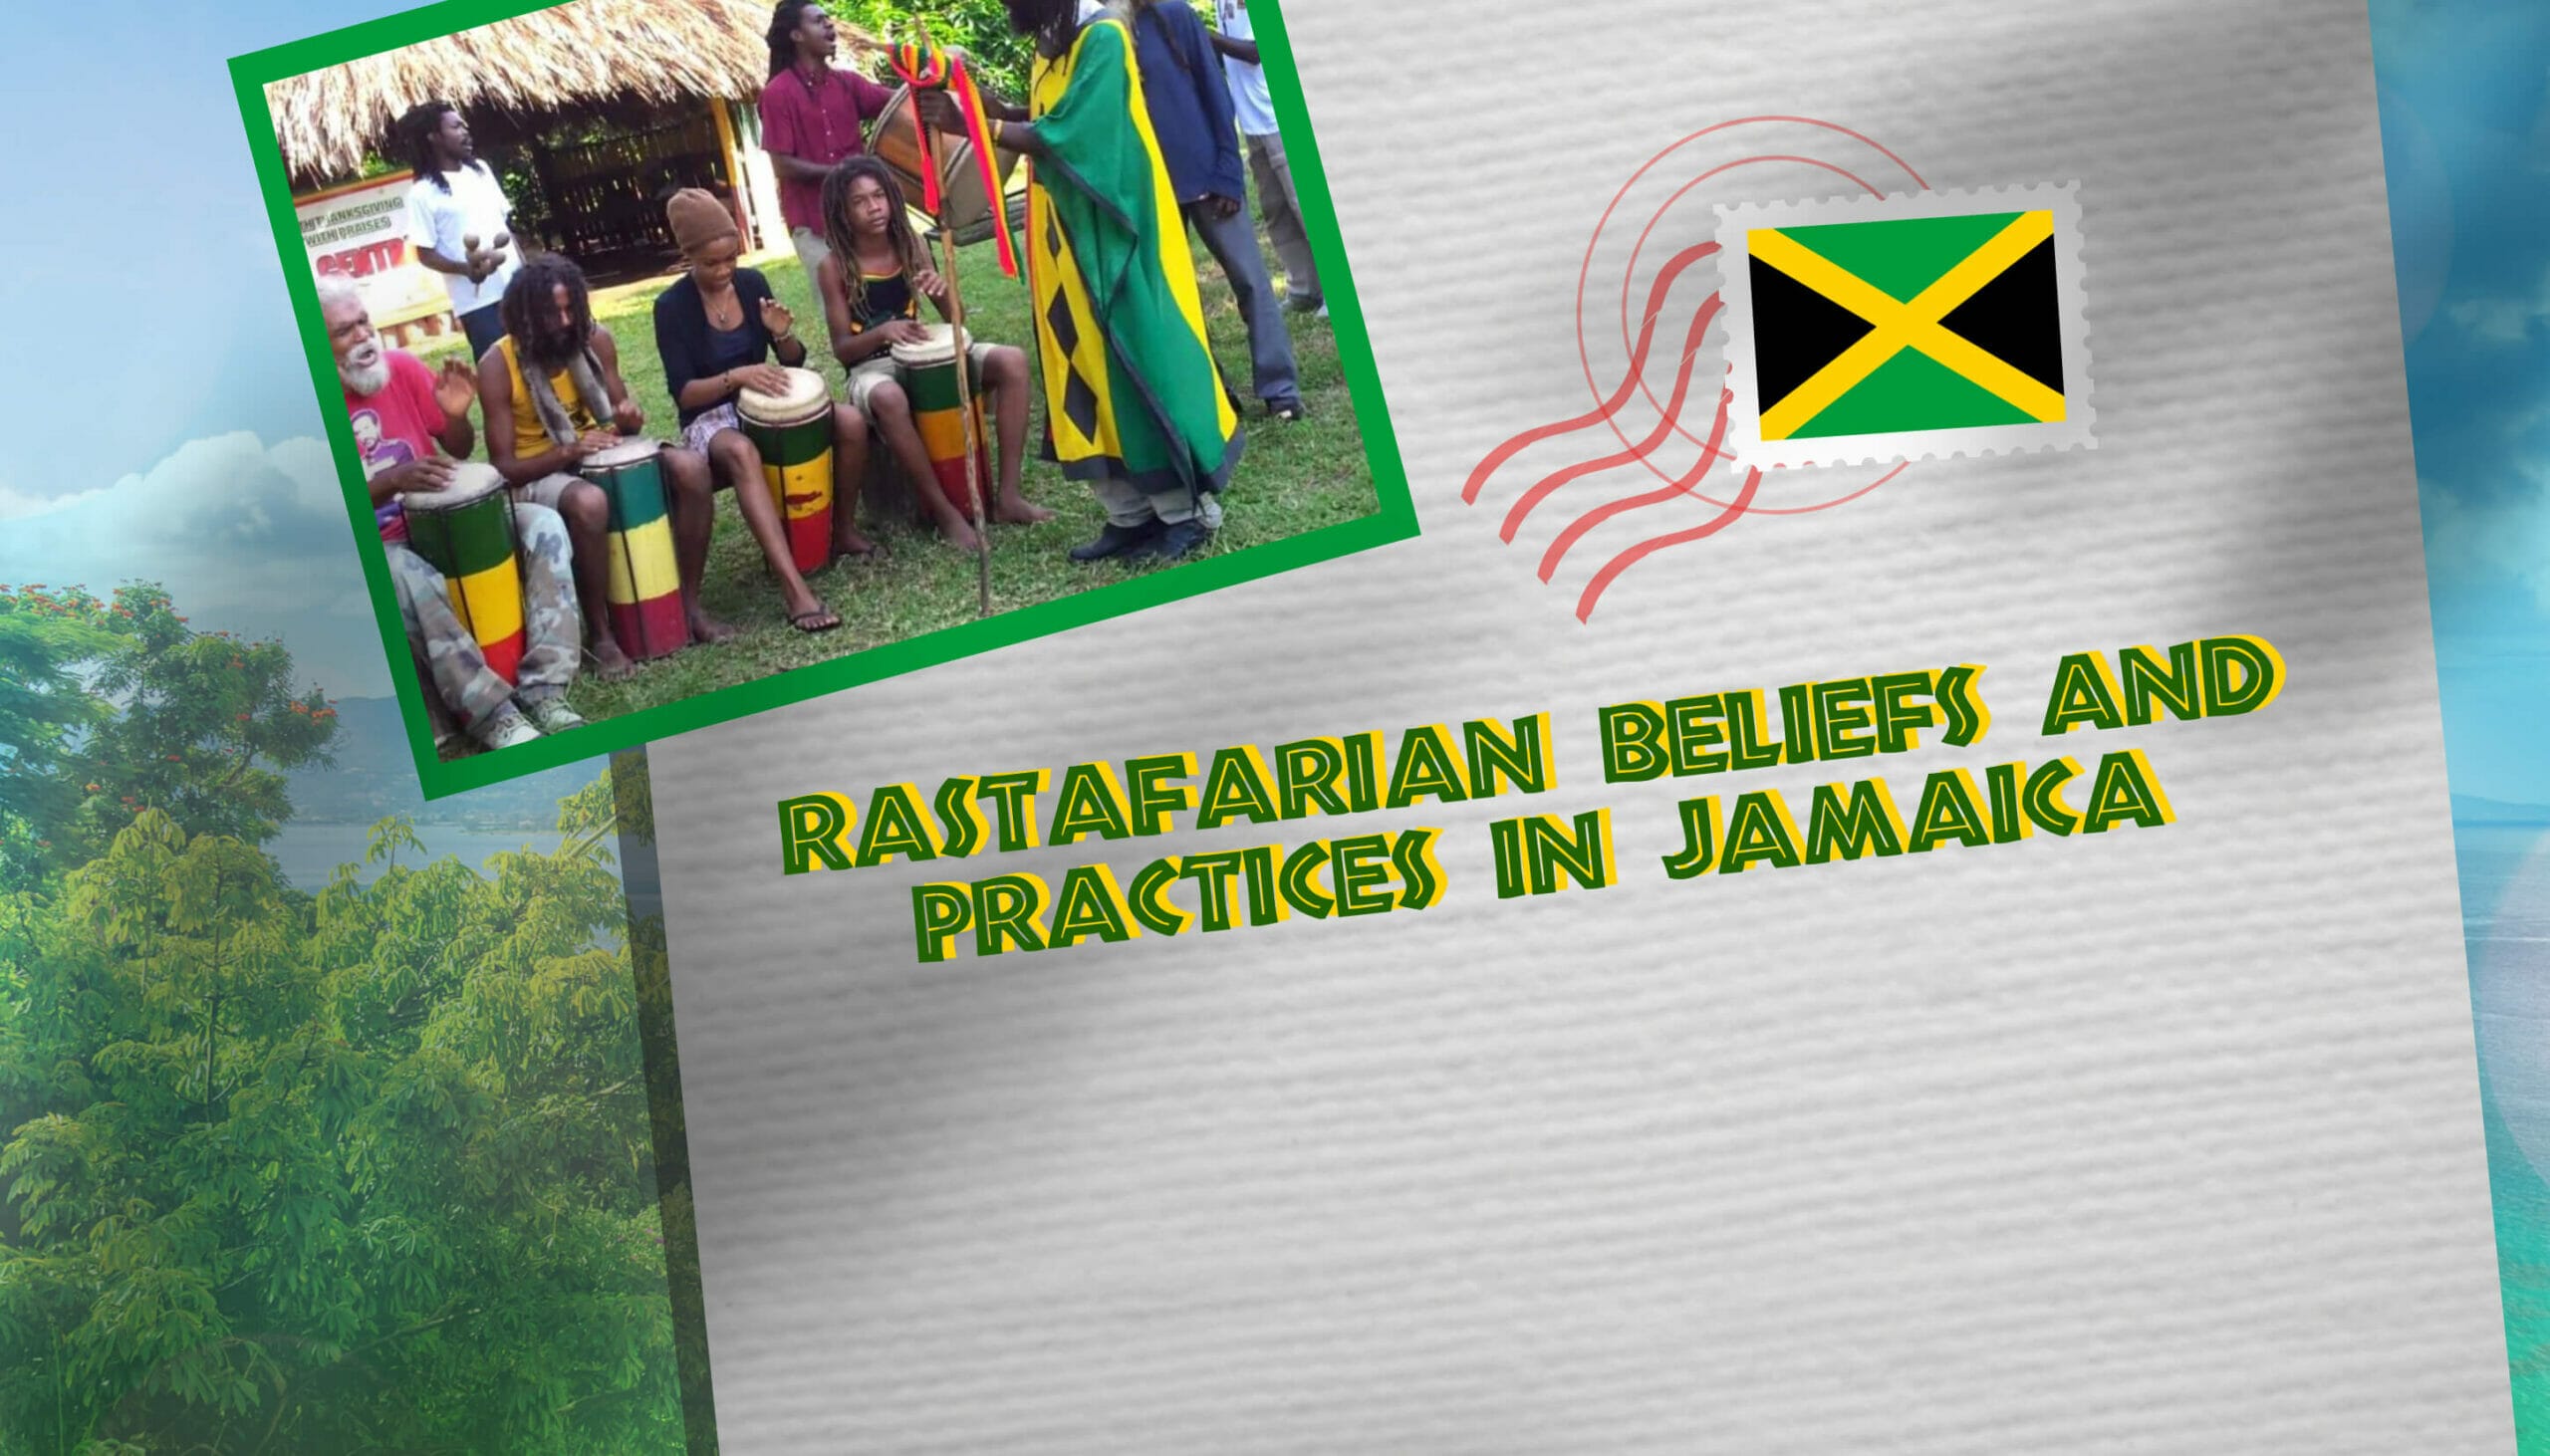 Rastafarian beliefs and practices in Jamaica